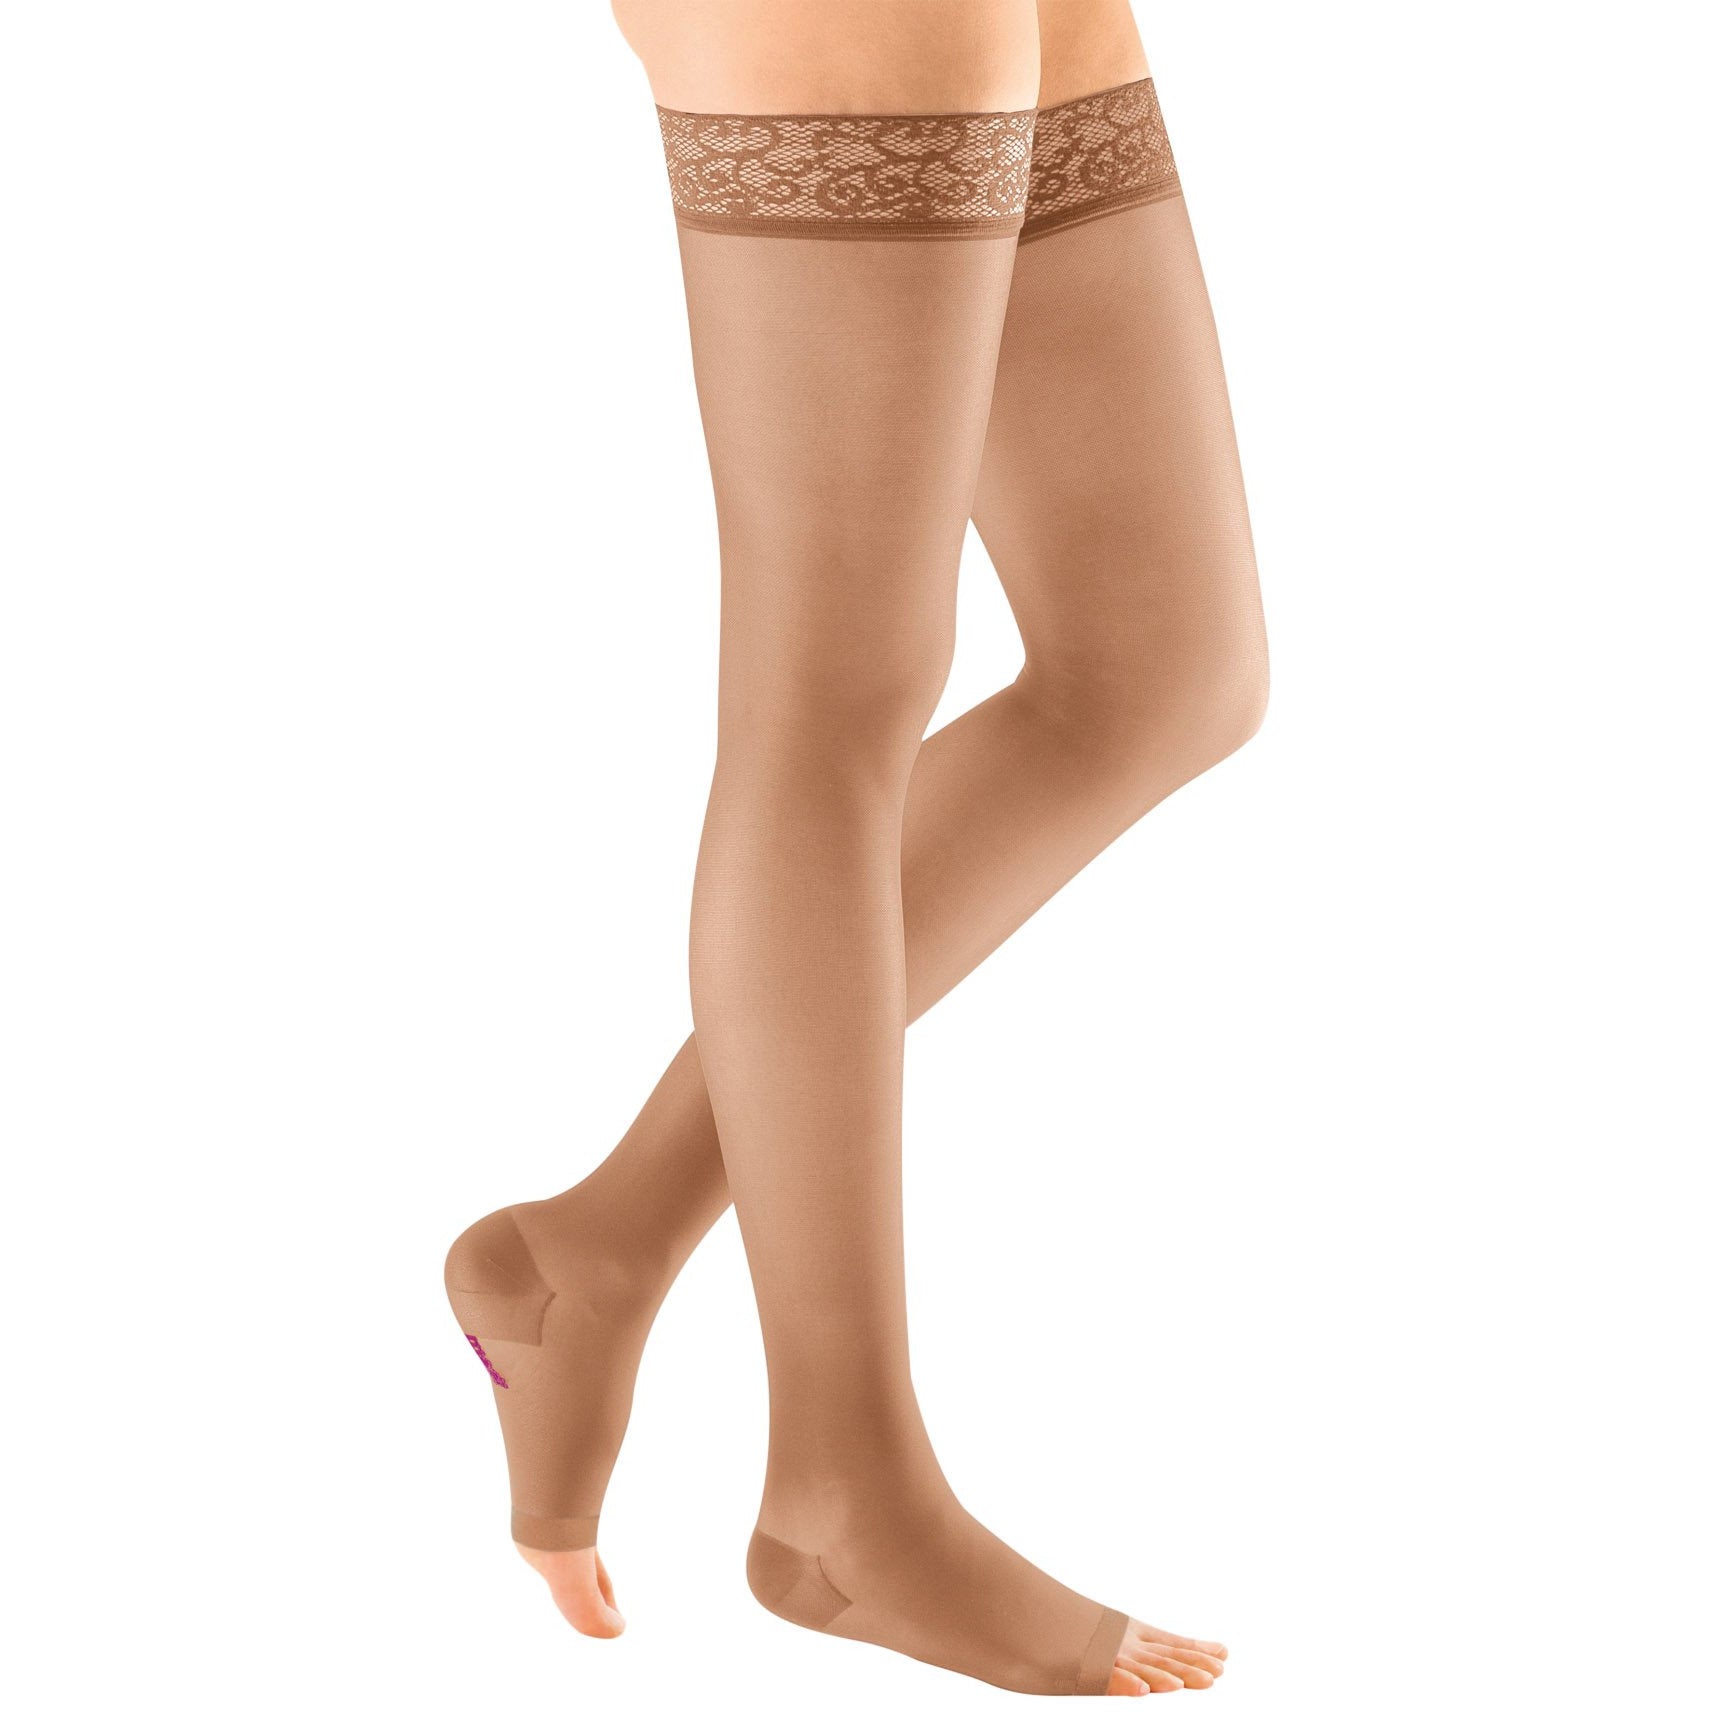  mediven Plus for Men & Women, 20-30 mmHg – Knee High